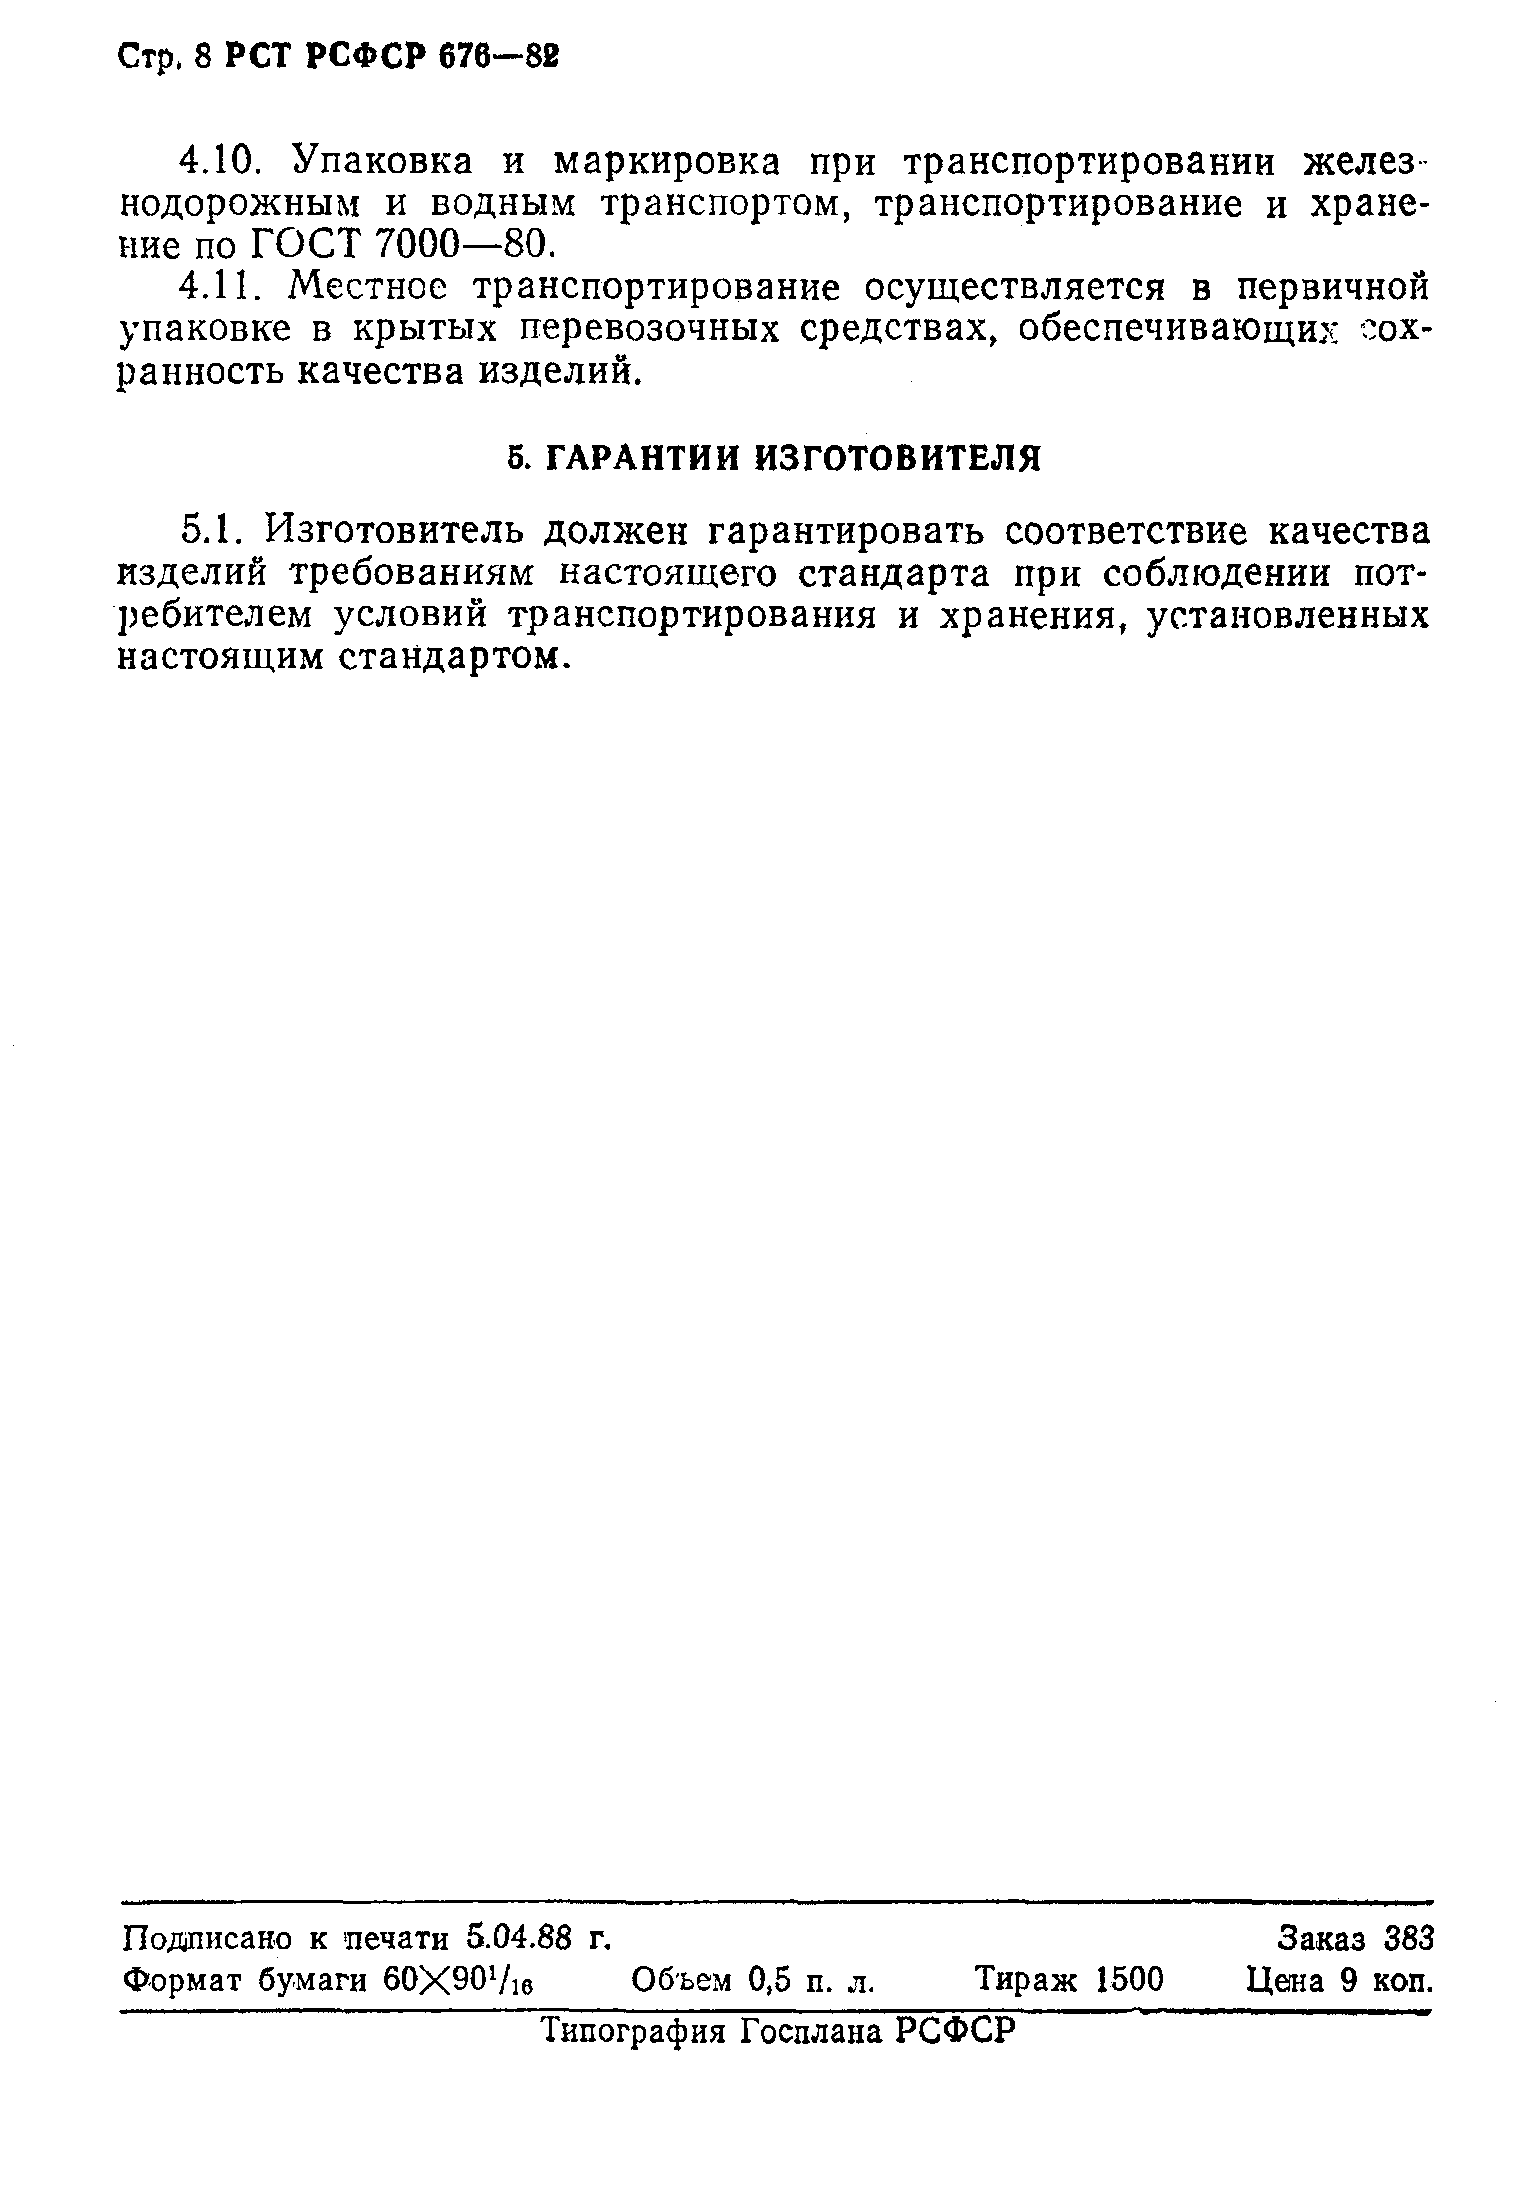 РСТ РСФСР 676-82